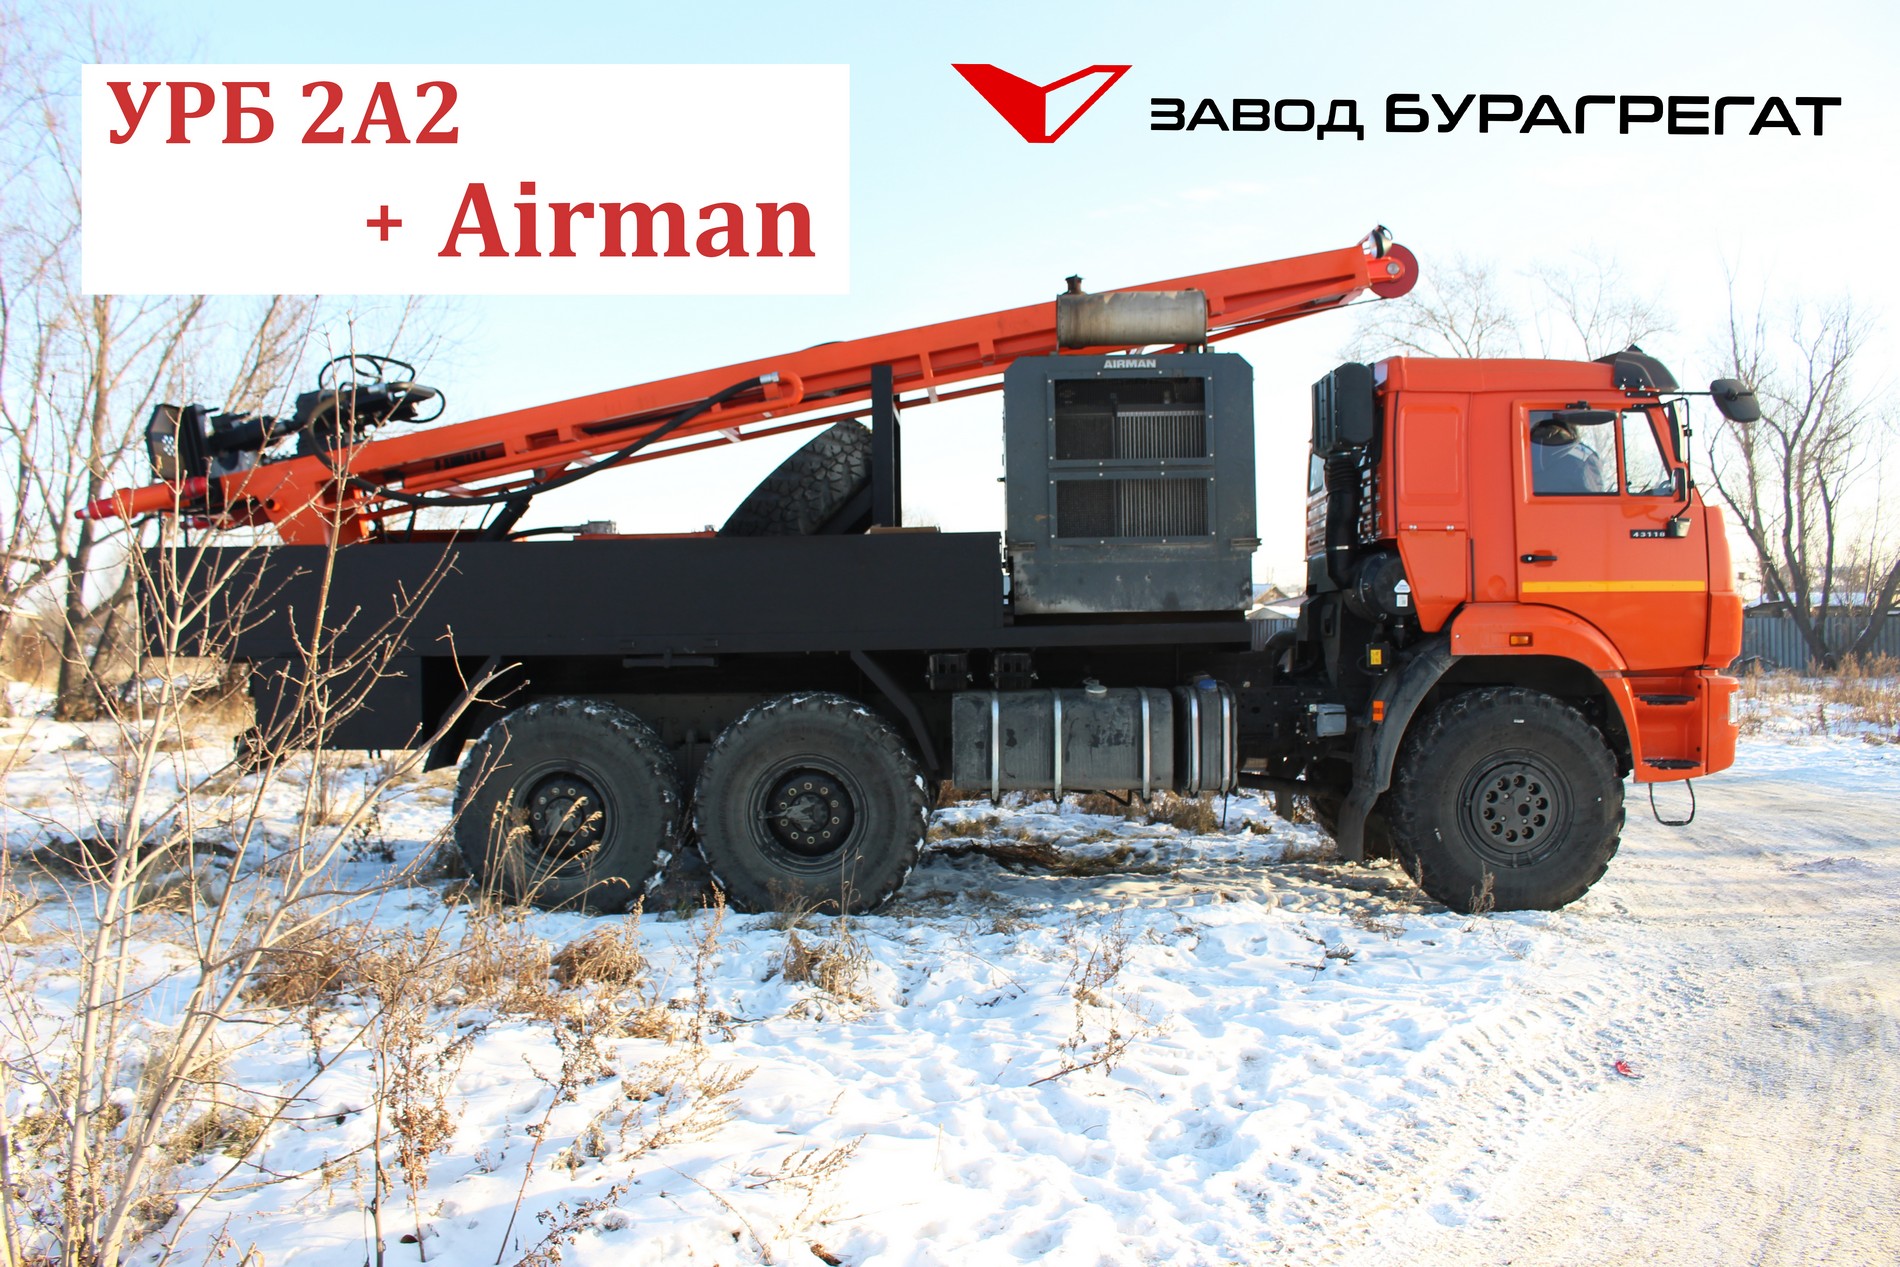 Буровая установка УРБ 2А2 + Airman: обзор 2020